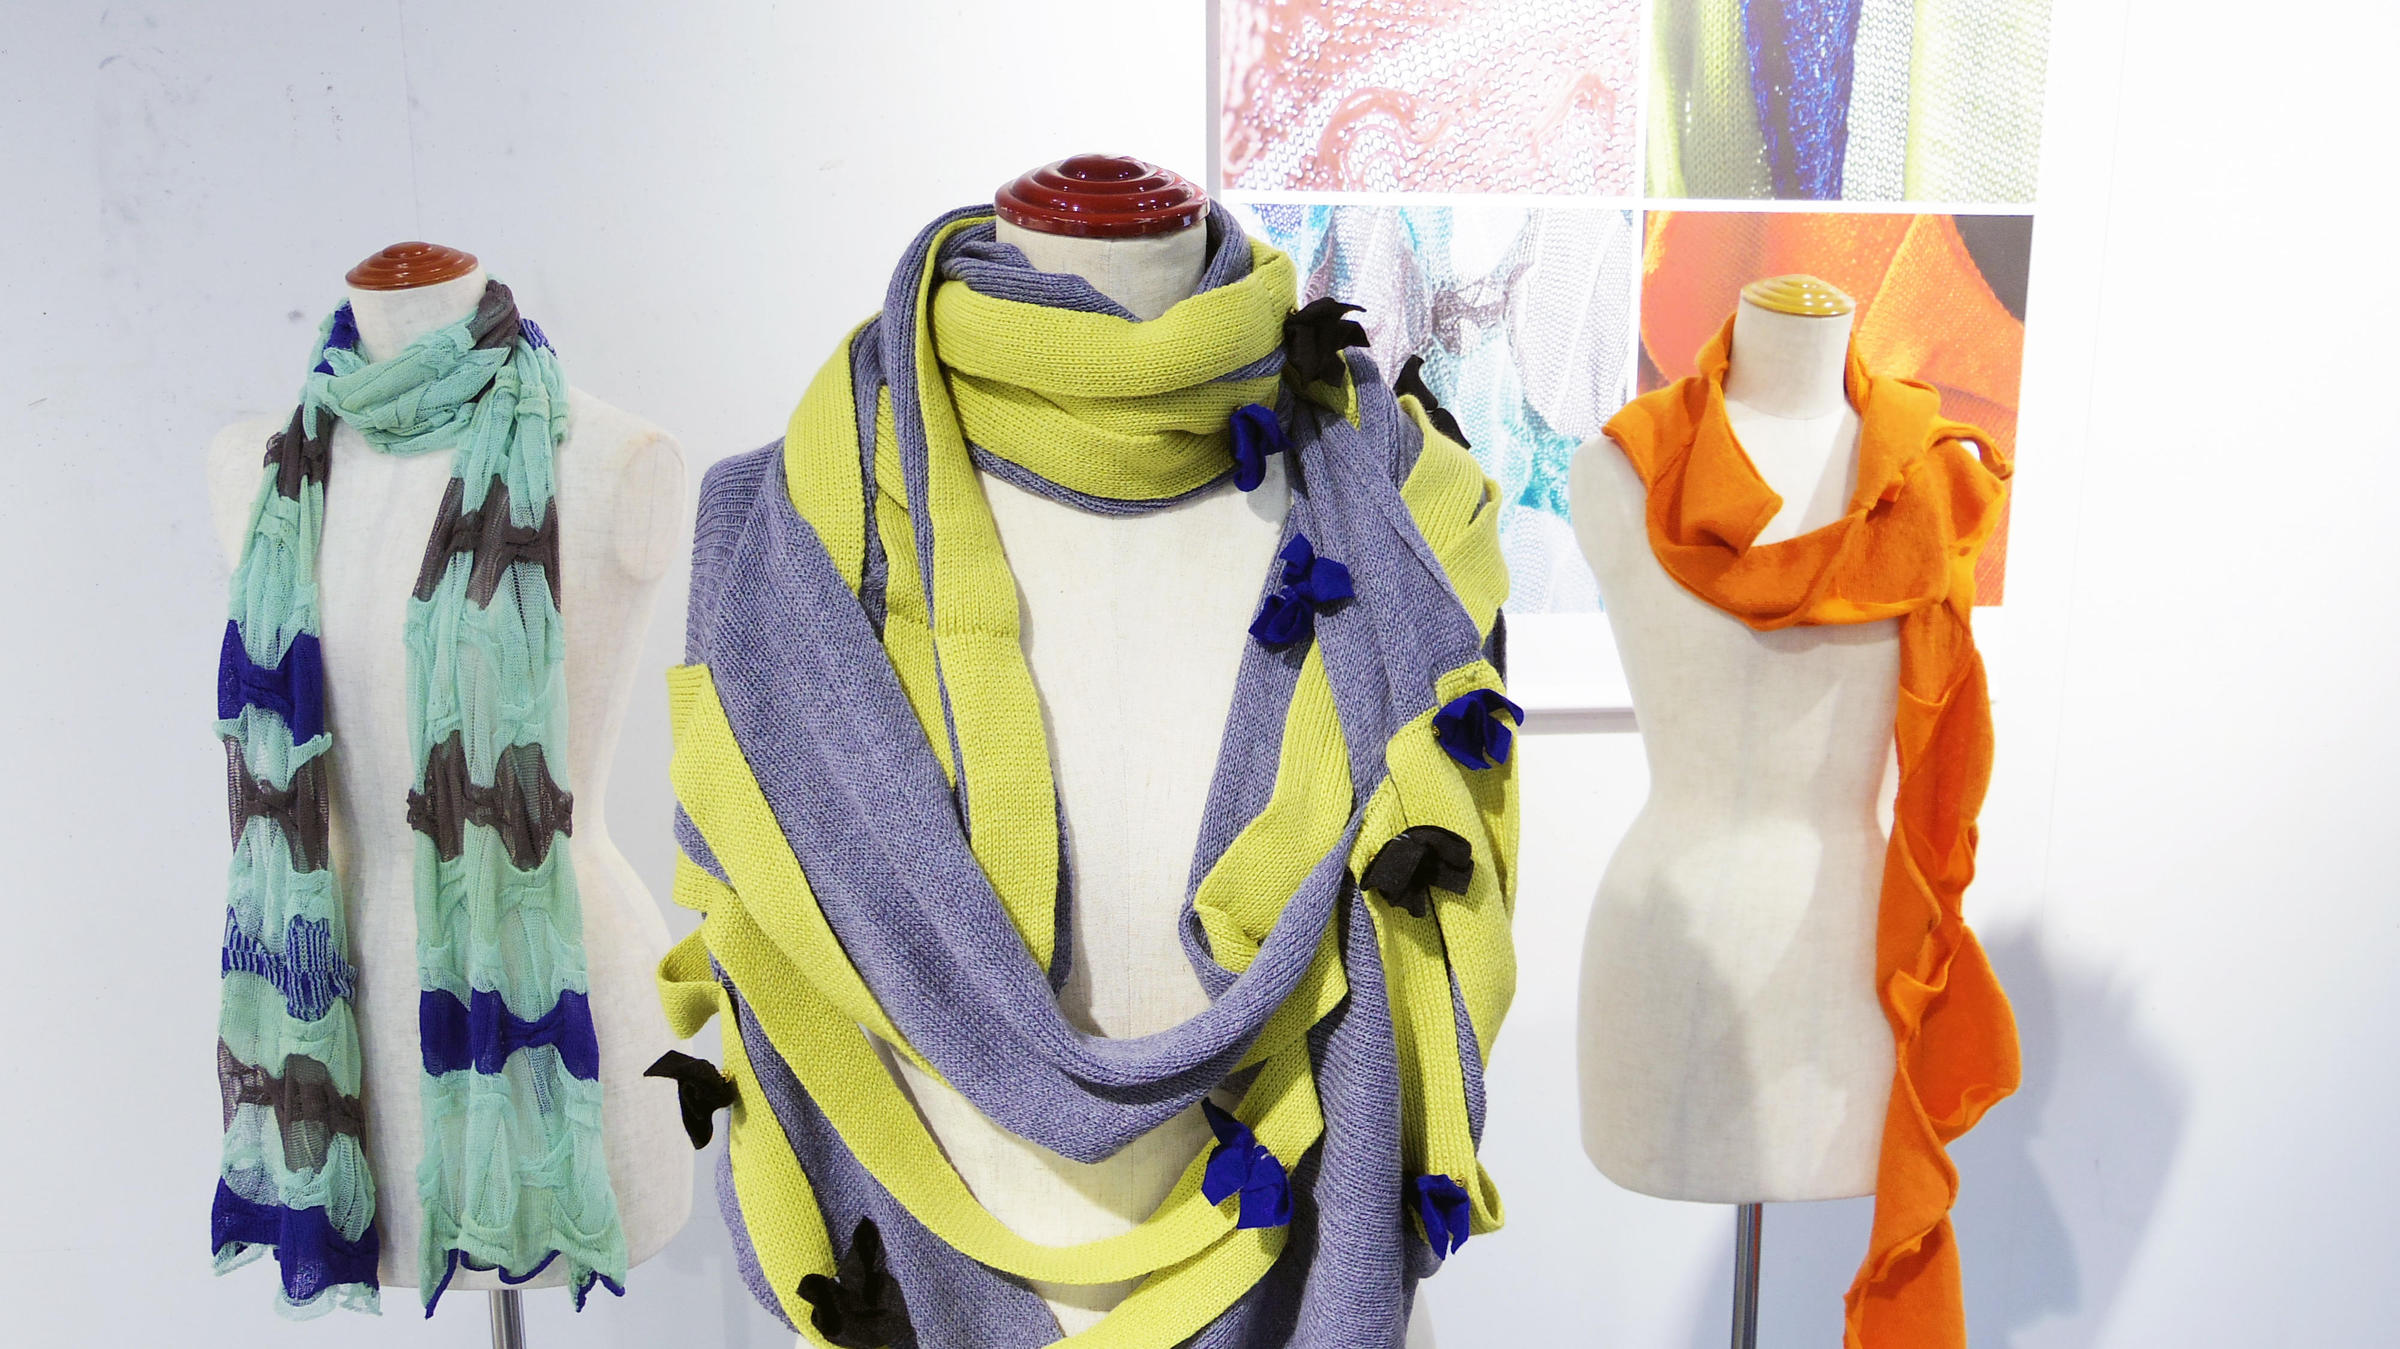 Exhibition view of “KYOKO NAGASAWA ─ Knit & Textile Designer”